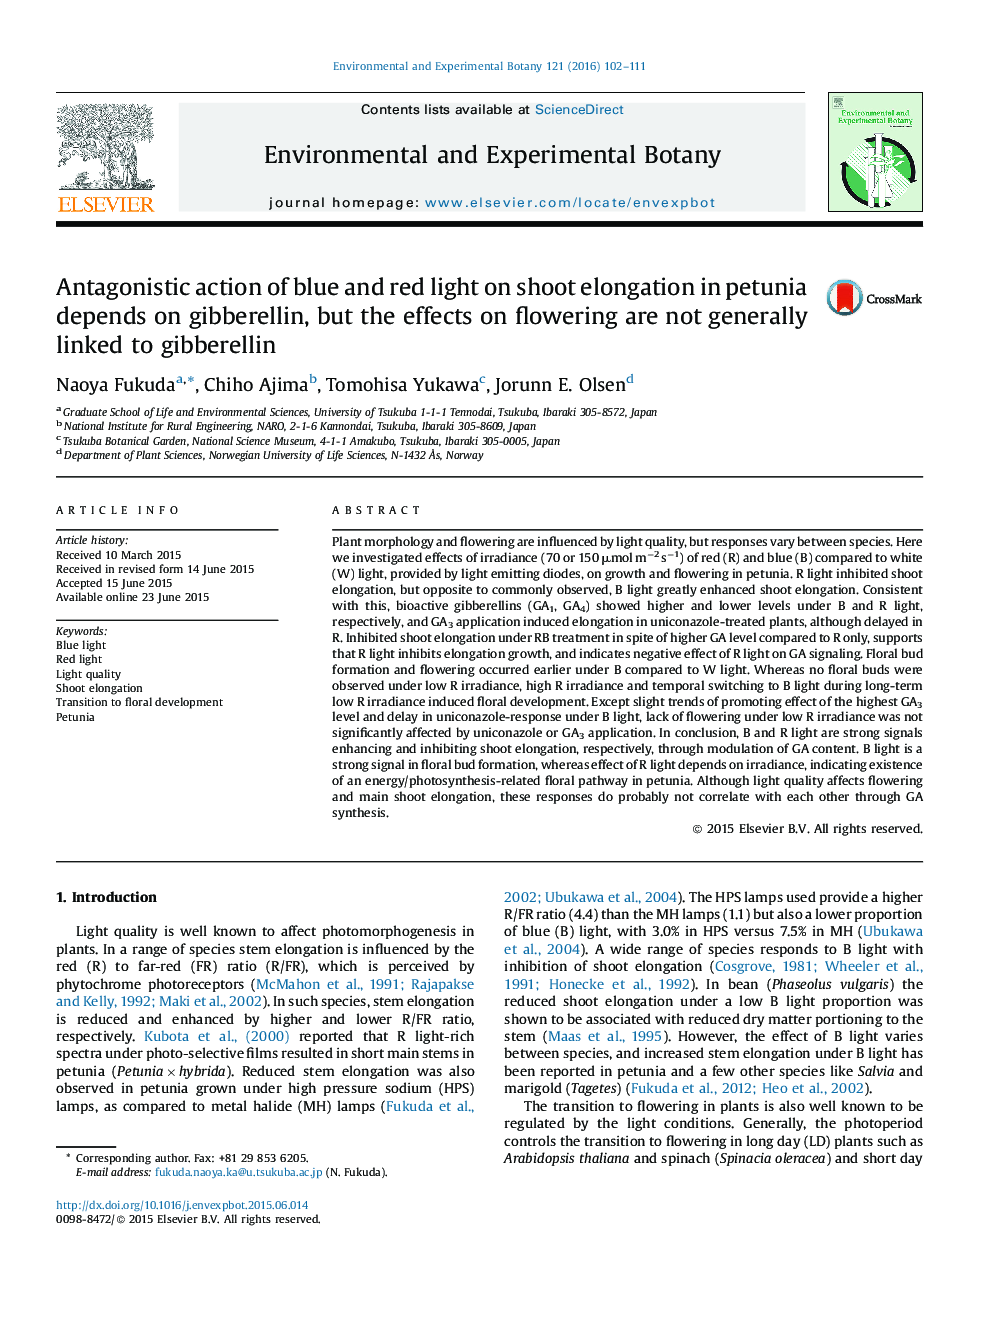 اثر آنتاگونیستی نور آبی و قرمز بر طول انقباض ساقه در پتونا، به گیببرلین بستگی دارد، اما تأثیرات بر گلدهی به طور کلی با گیببرلین ارتباط ندارد 